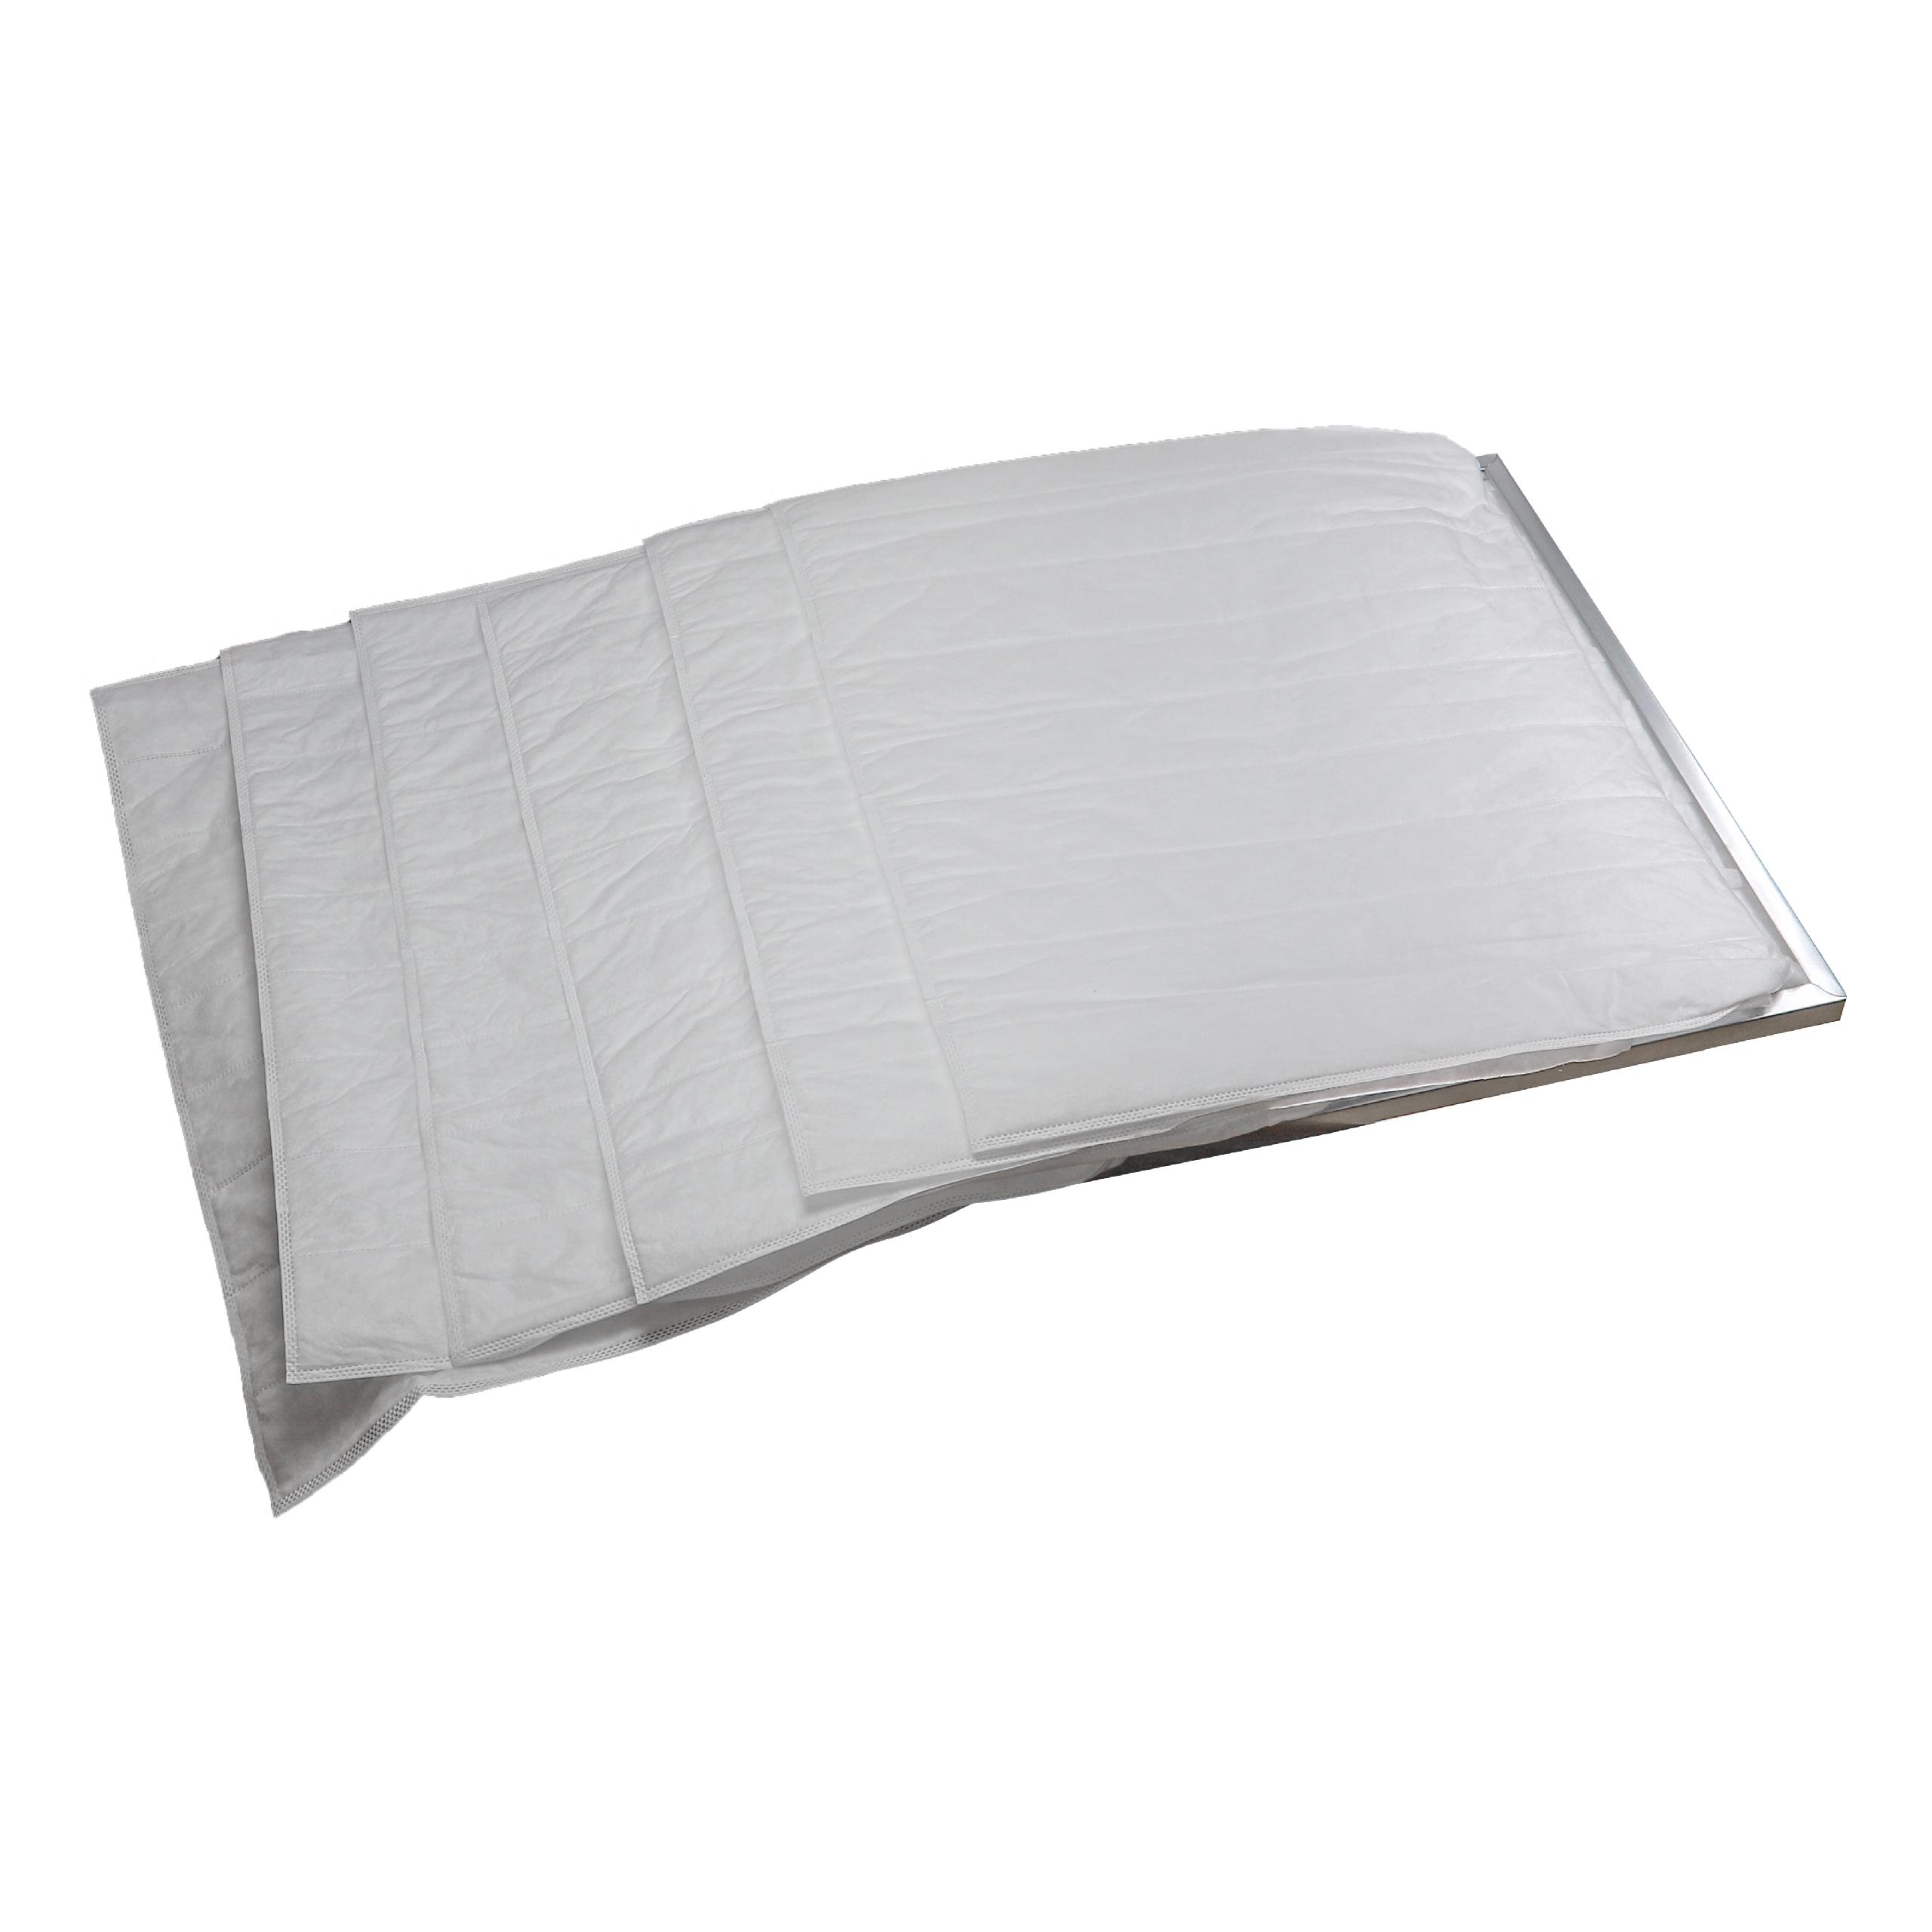 Taschenfilter G4 passend für Klimaanlagen, Lüftungsanlagen - 60 x 59,2 x 59,2 cm